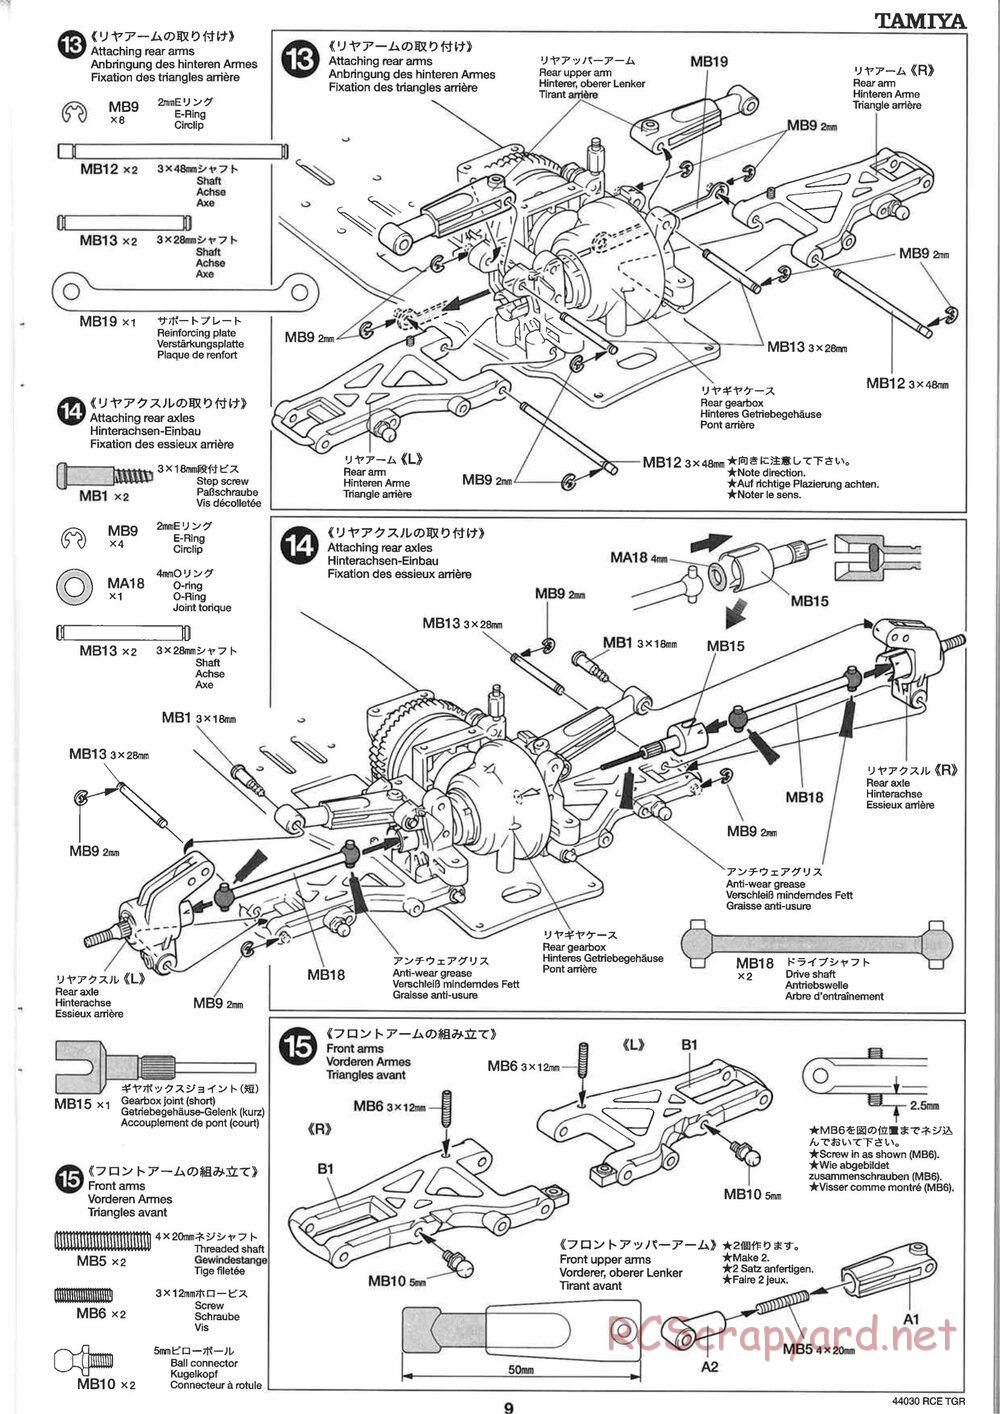 Tamiya - TGR Chassis - Manual - Page 9